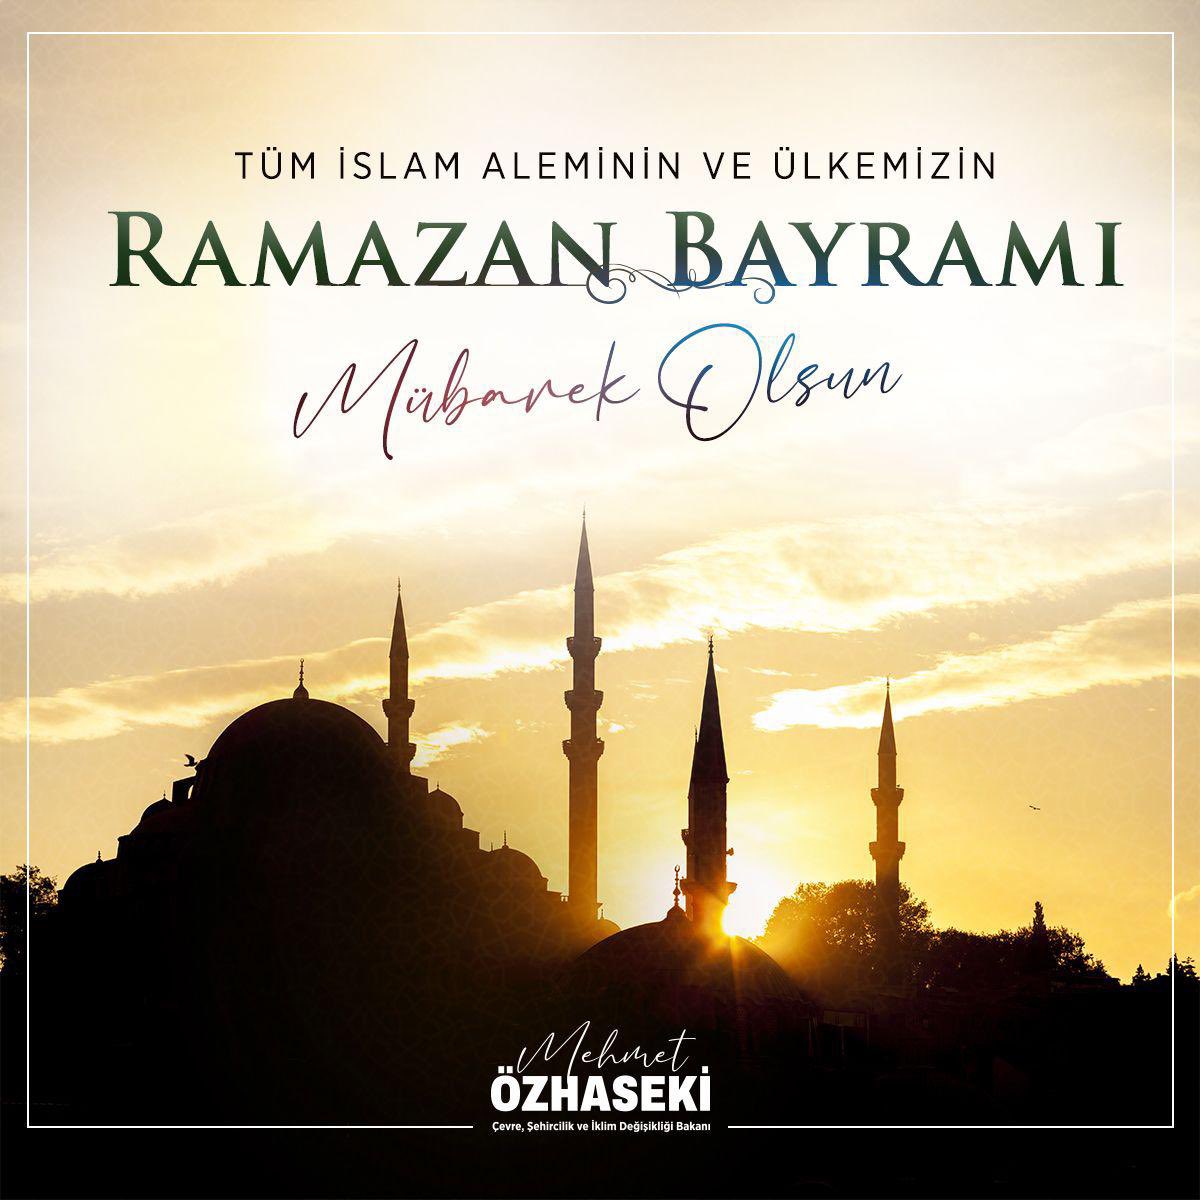 #RamazanBayramı’nın tüm İslam alemine, gönül coğrafyamıza ve ülkemize huzur ve bereket getirmesini diliyorum. Rabbim bizi nice bayramlarda kavuşturmayı nasip etsin. Ramazan Bayramı’mız mübarek olsun.